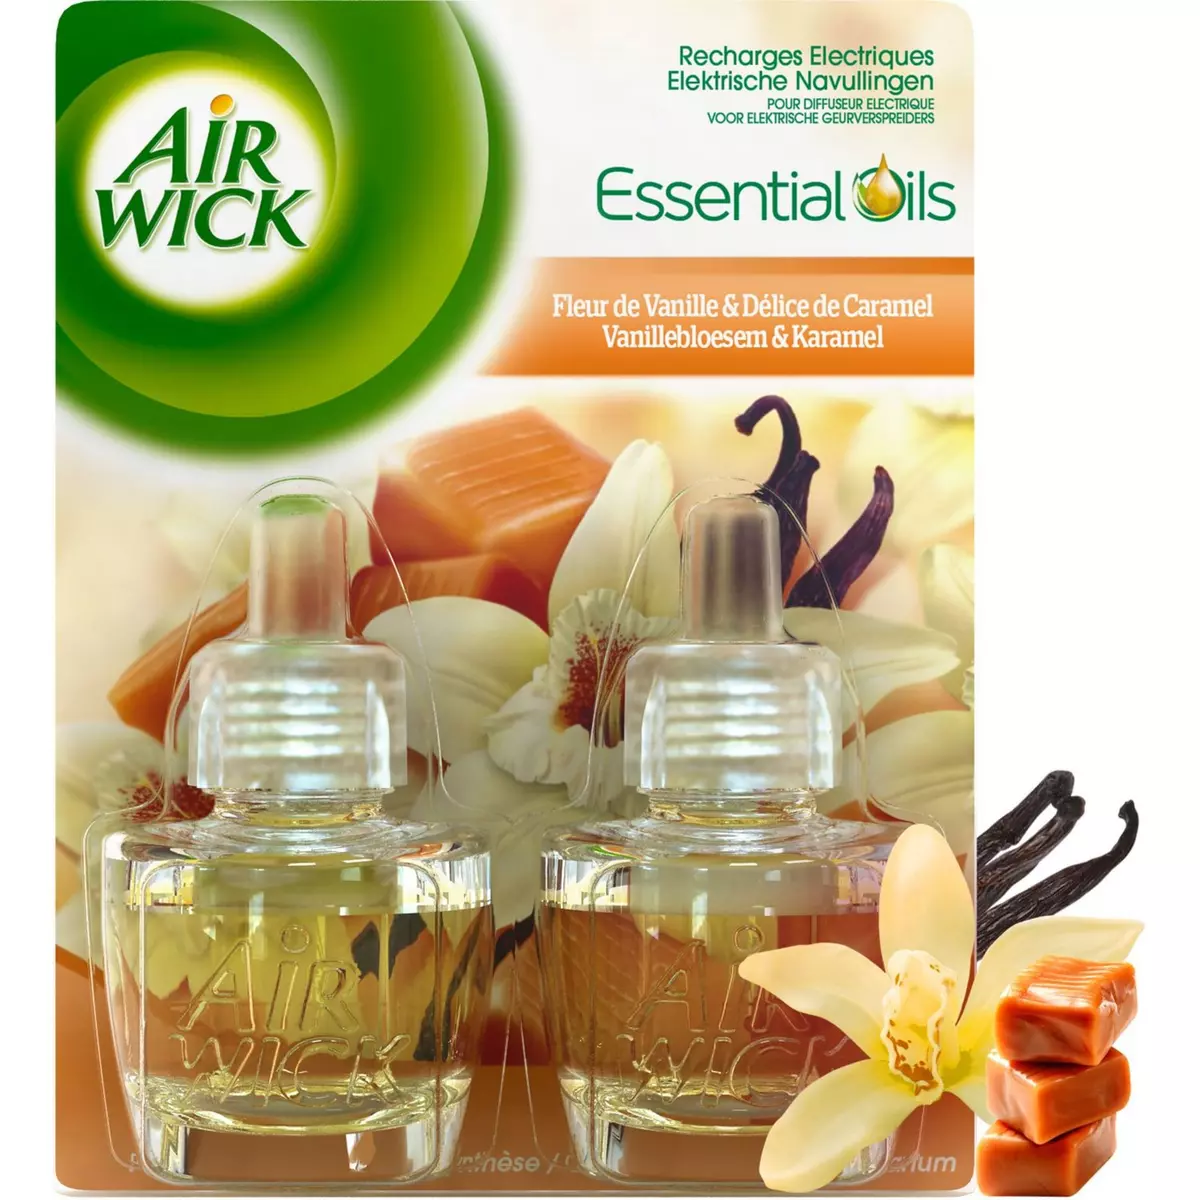 AIR WICK Essential Oils Recharges électriques fleurs de vanille et délice de caramel 2x250ml